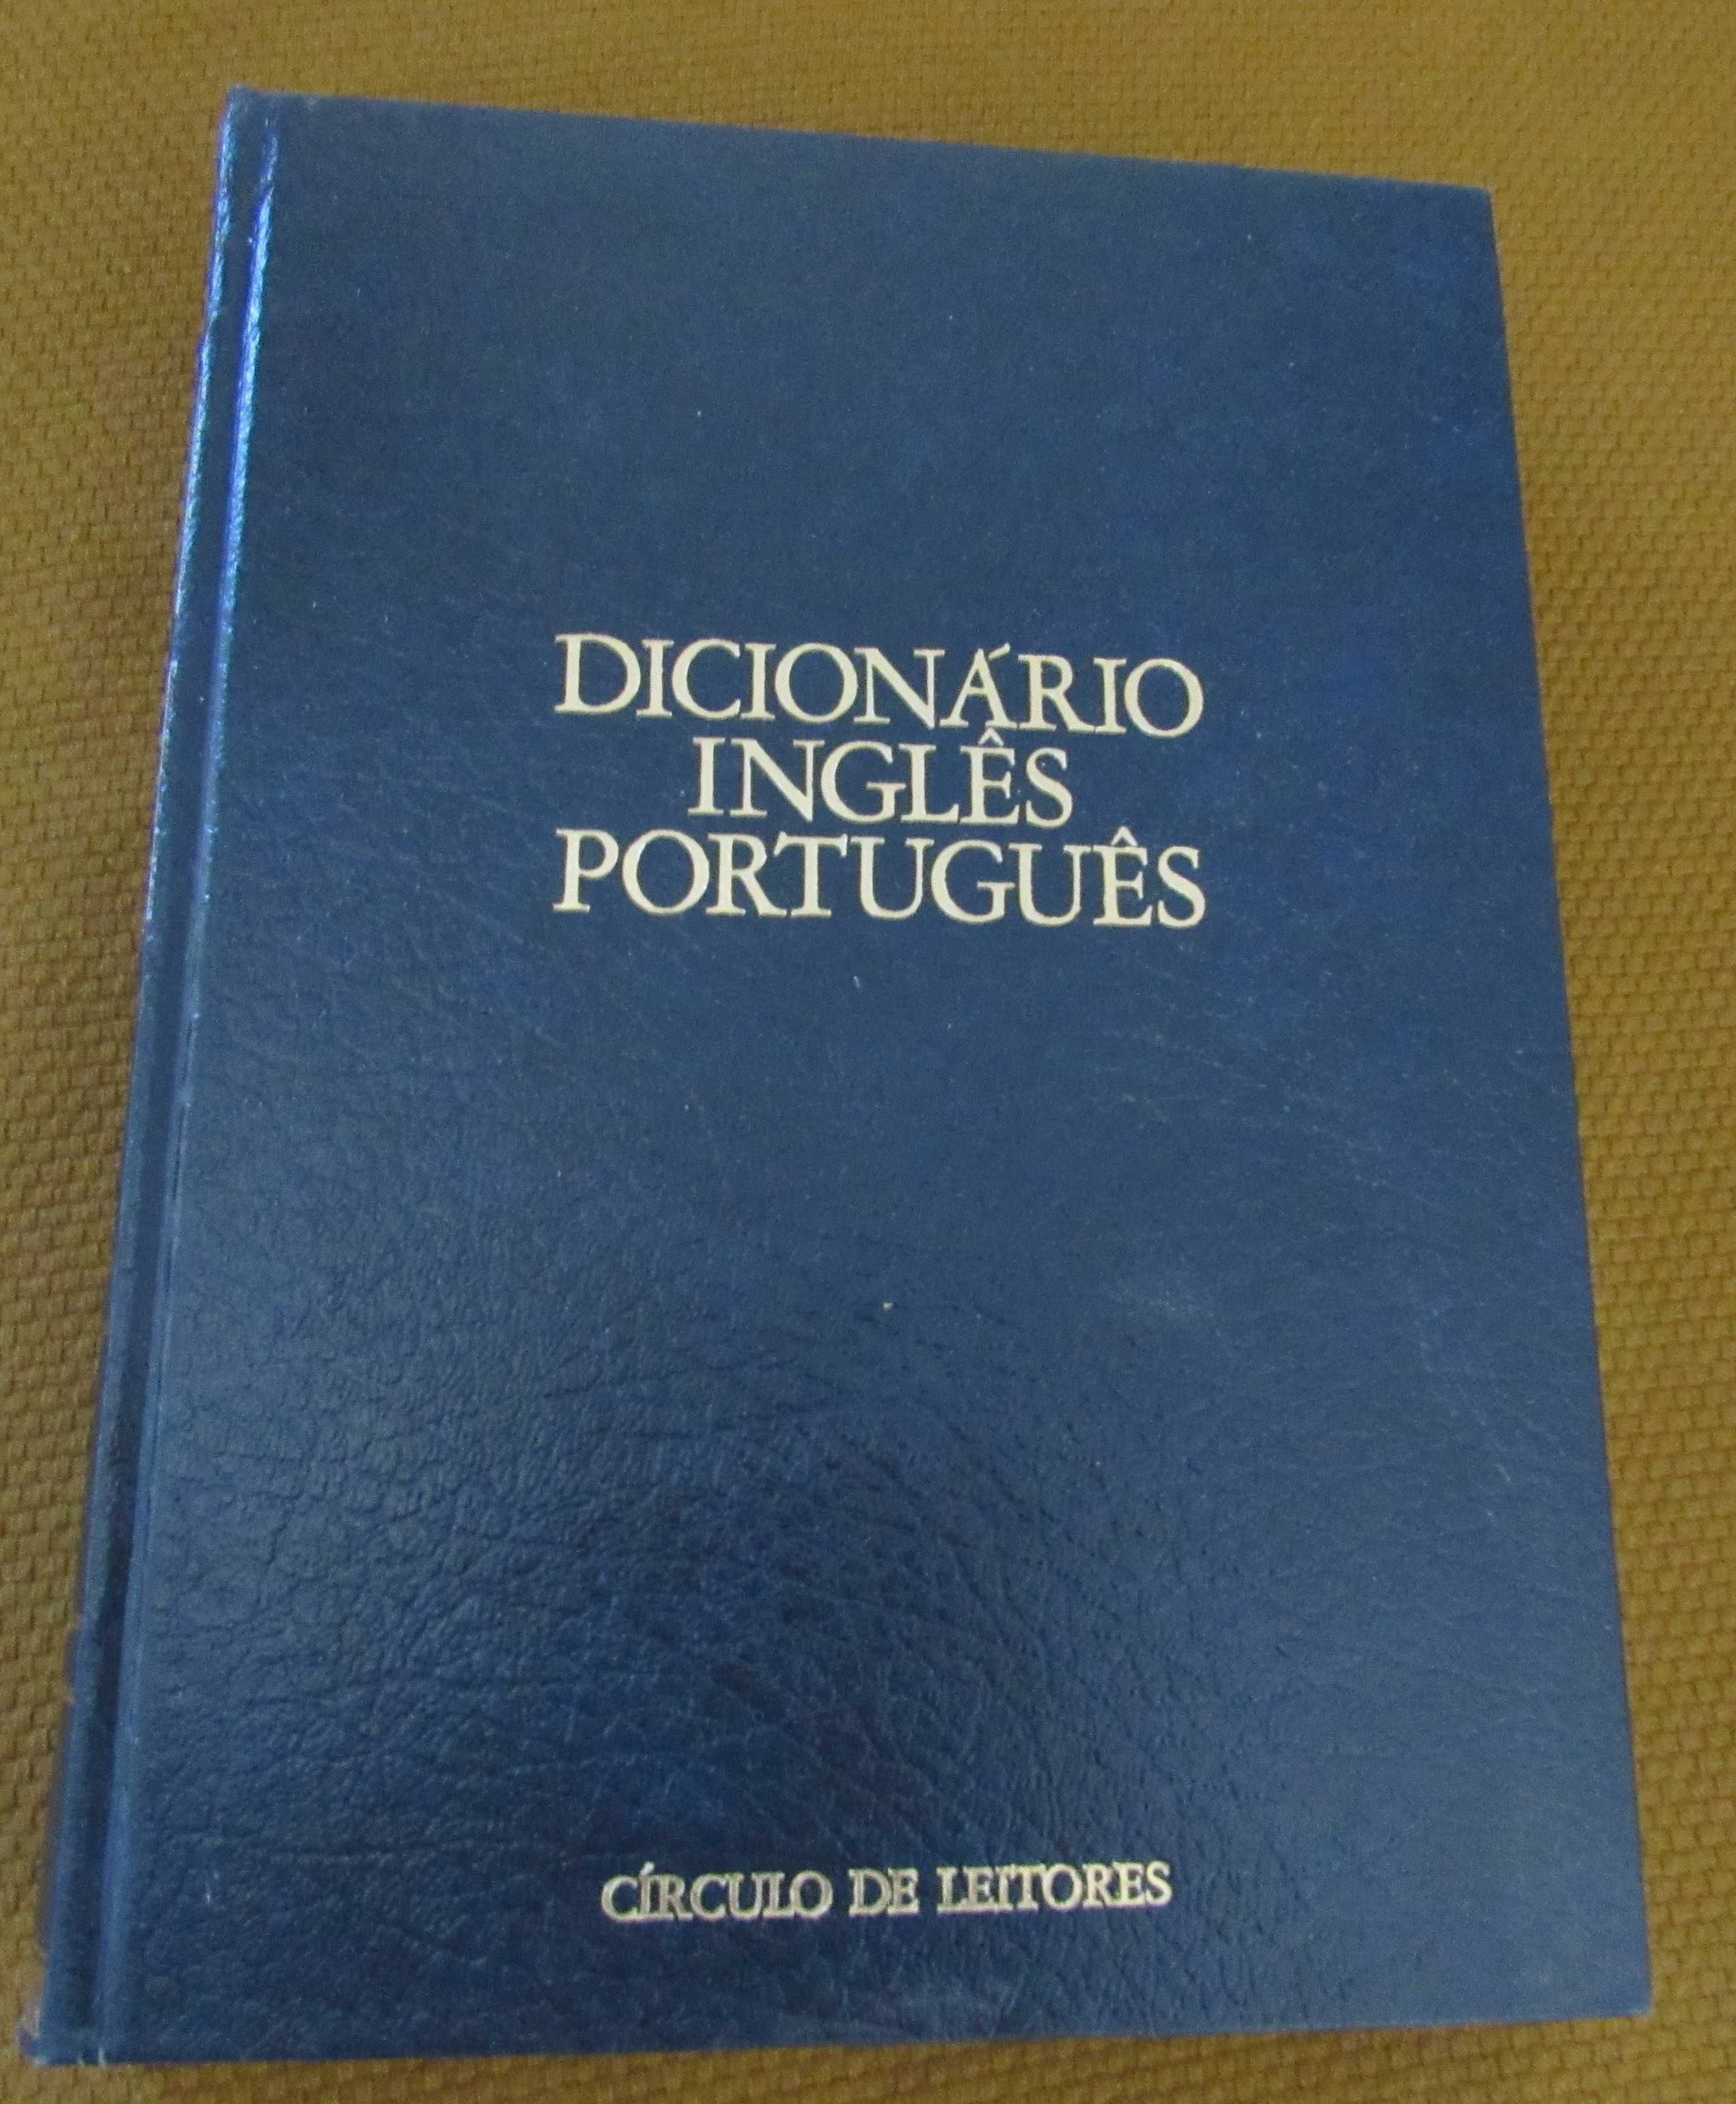 Dicionário Inglês / Português (Circulo de Leitores)